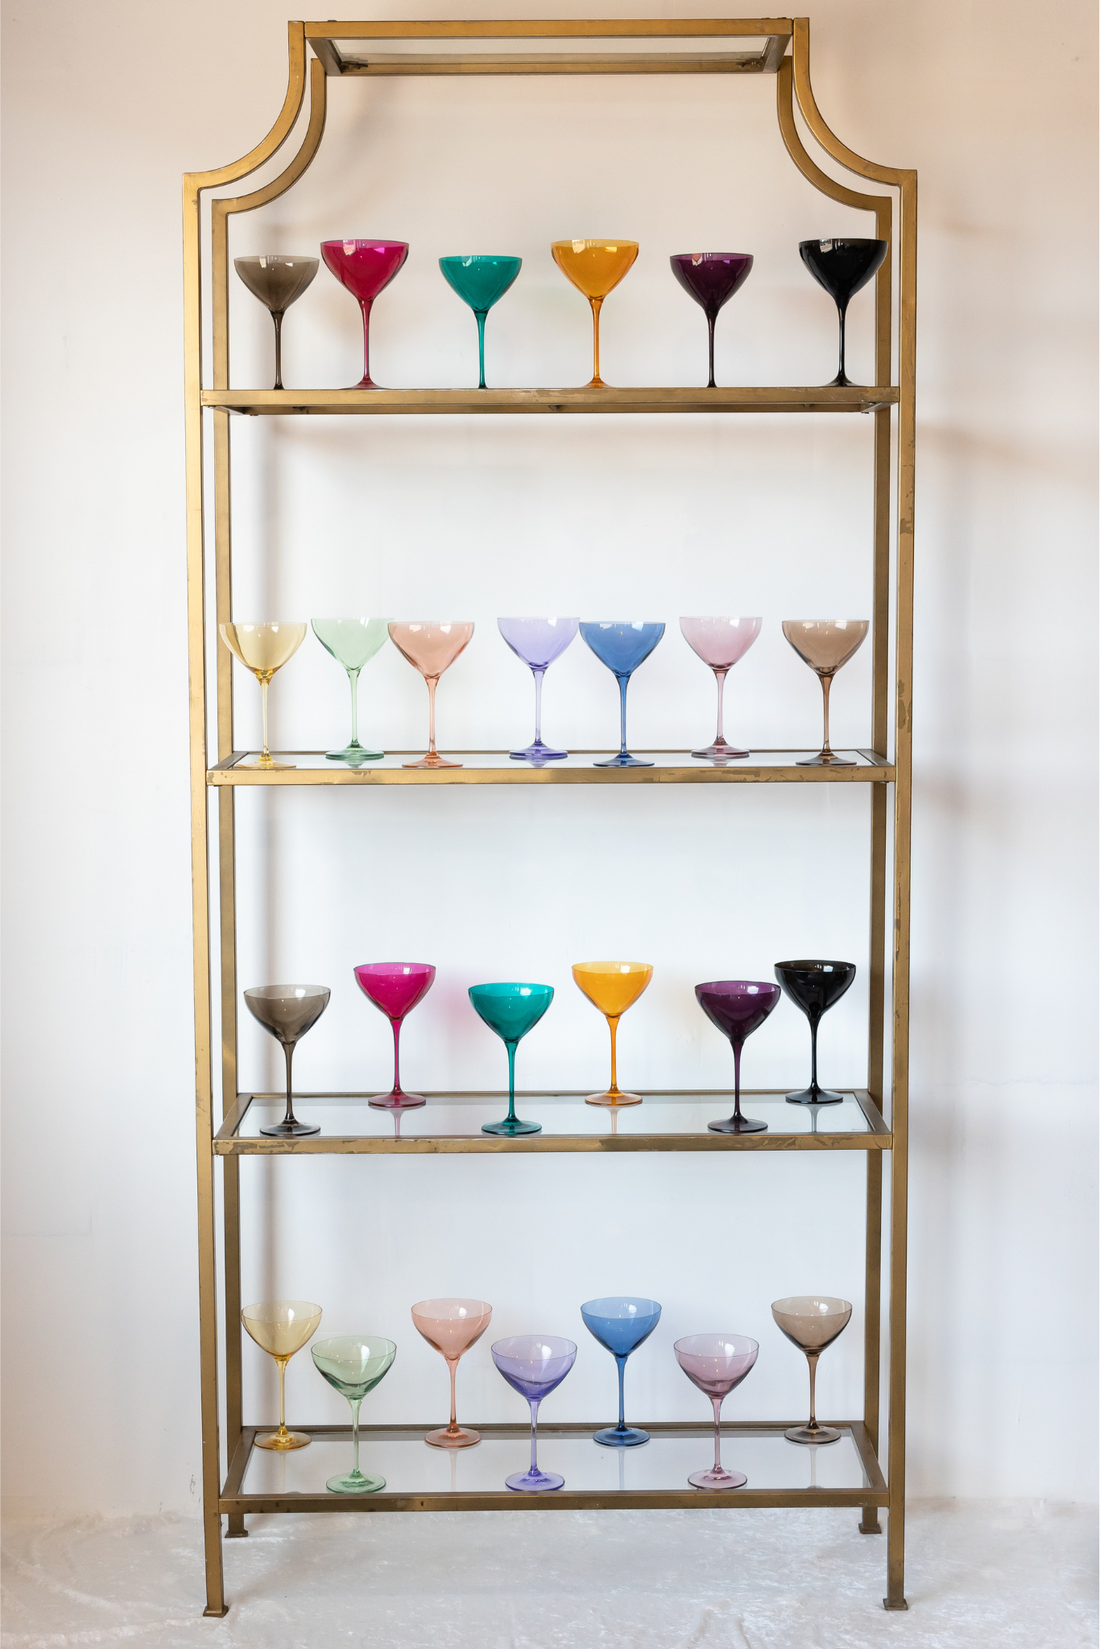 Martini Glass – Estelle Colored Glass